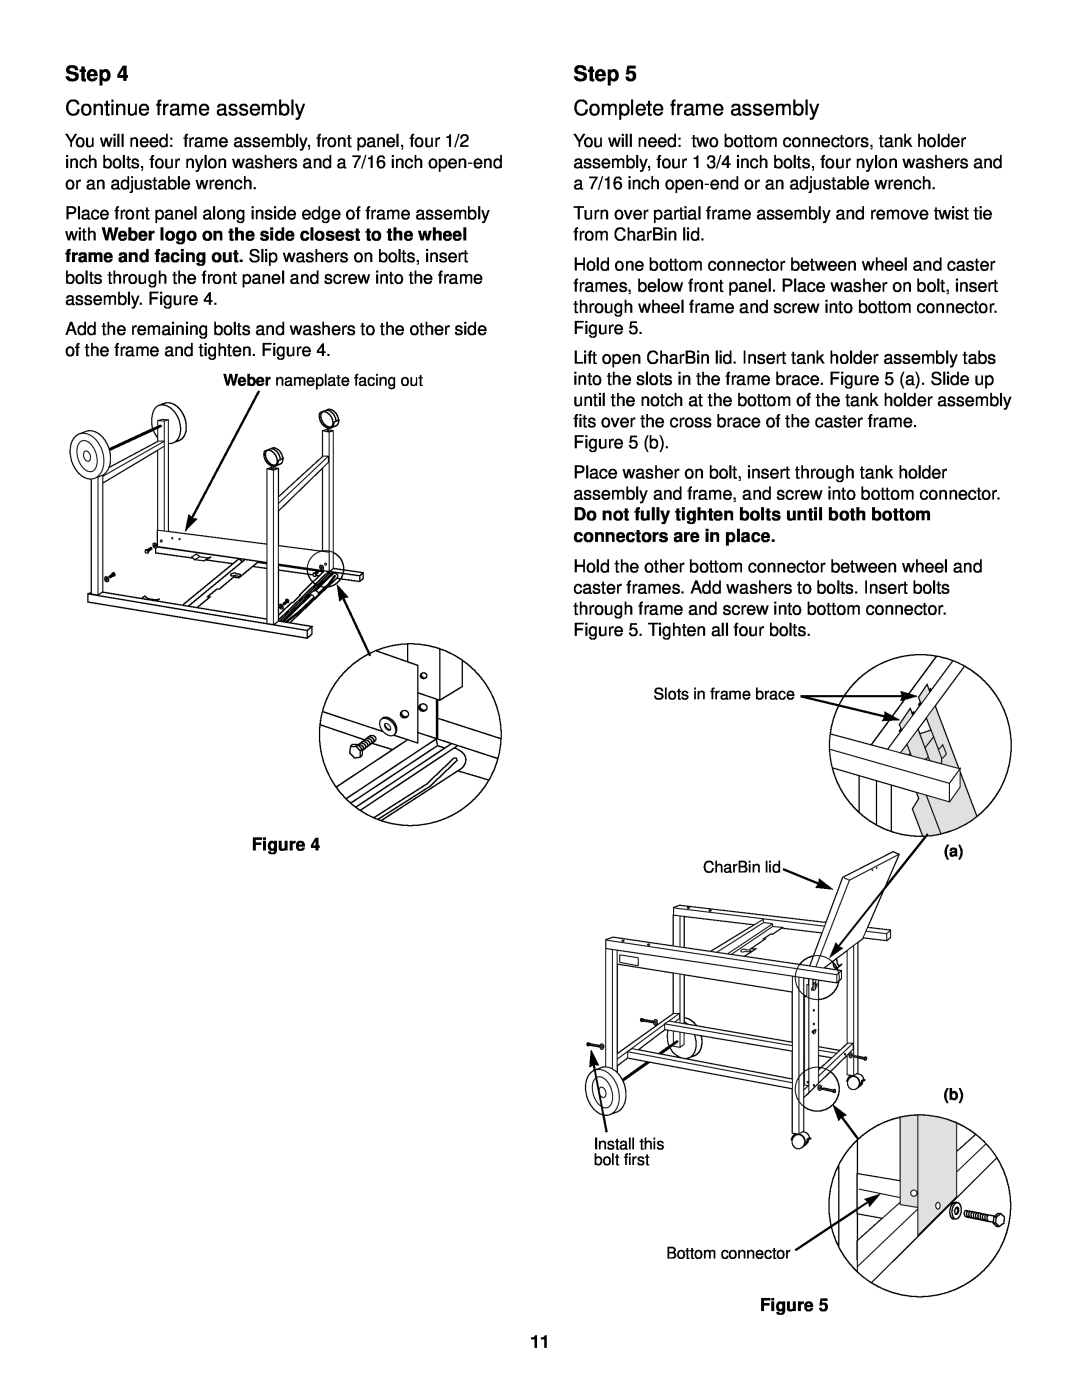 Weber Burner owner manual Step, Continue frame assembly, Complete frame assembly 